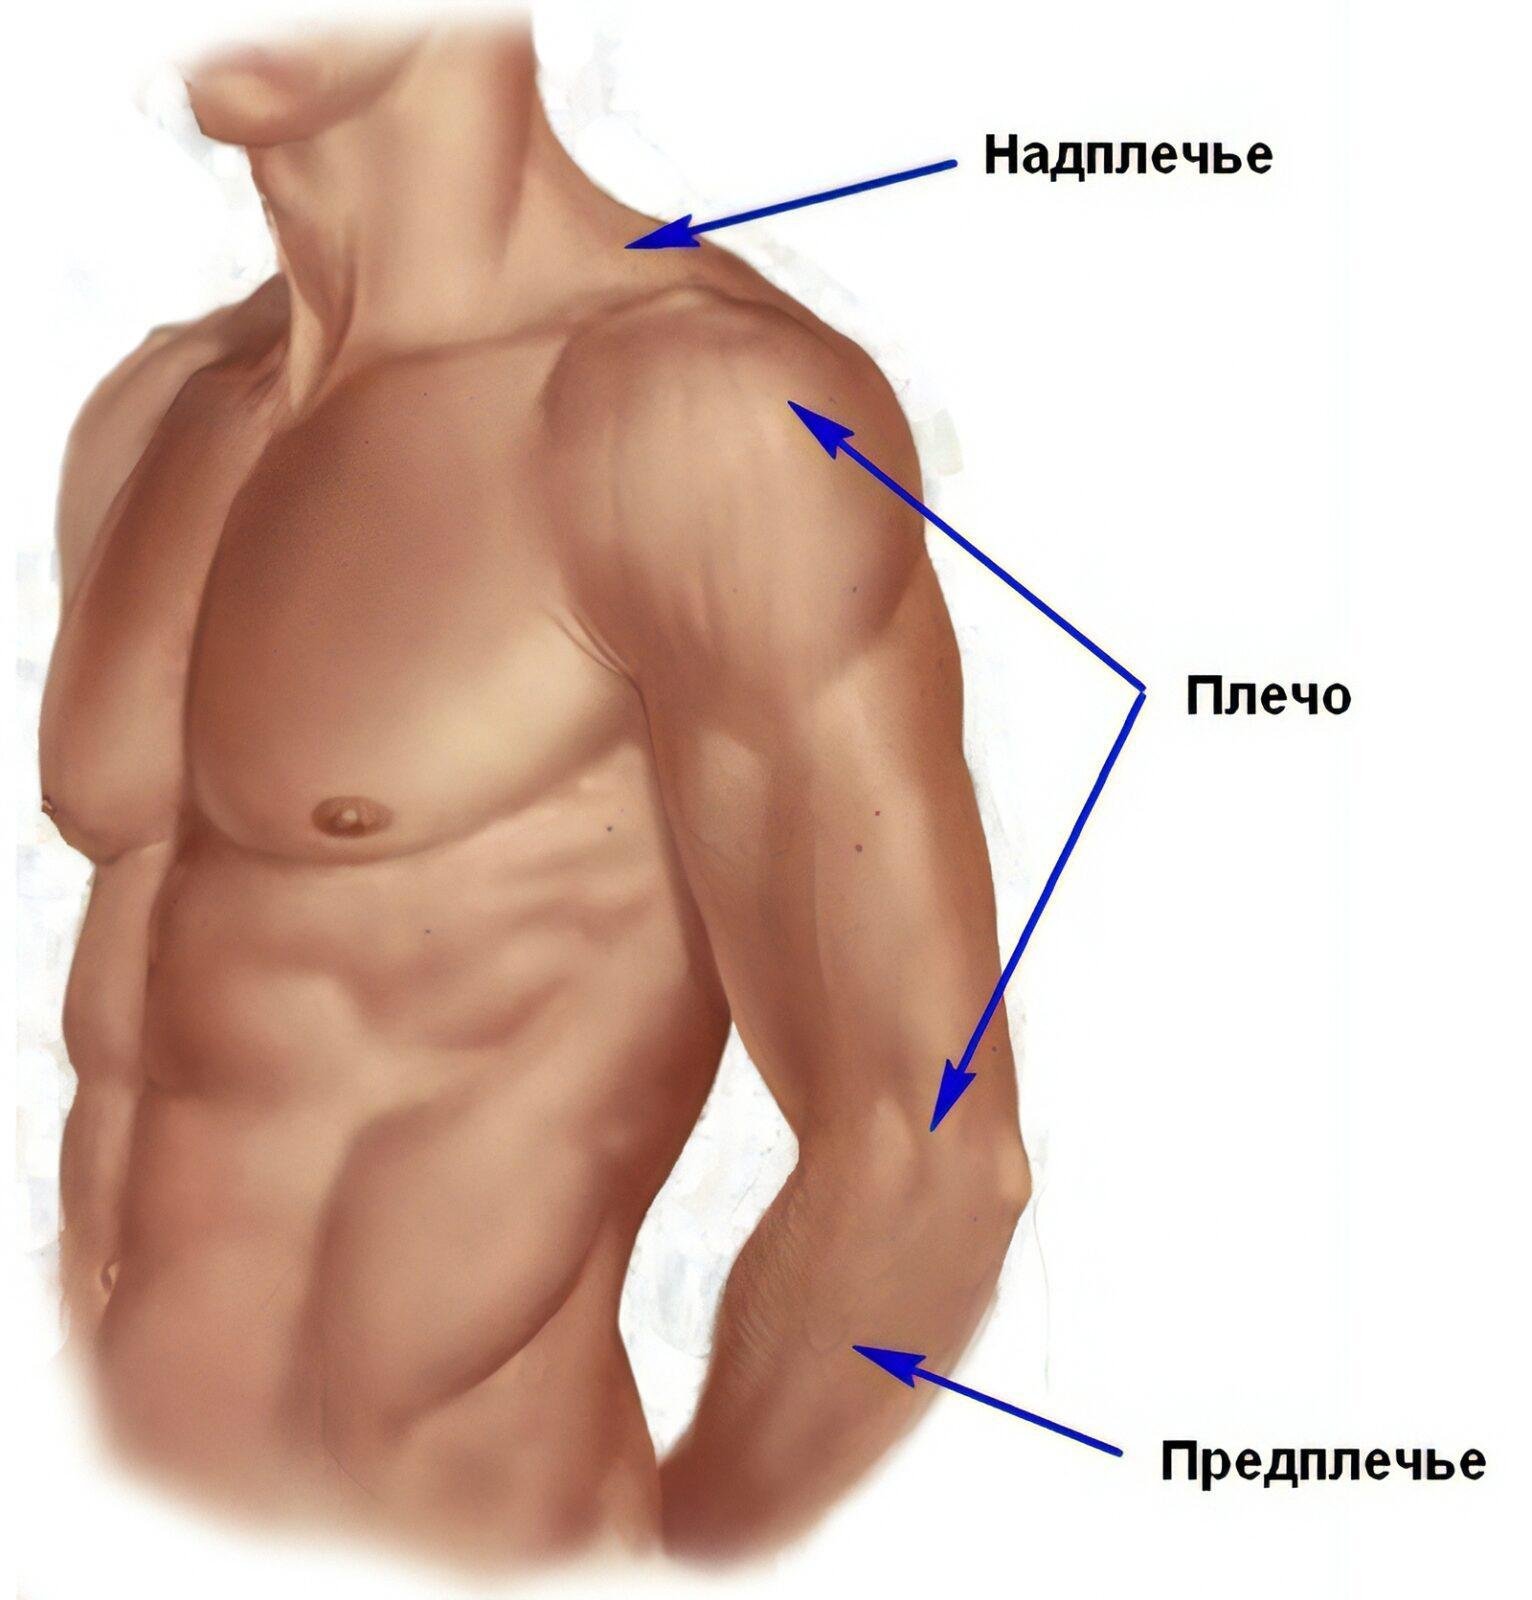 Покажи локоть человека. Анатомия плечо и предплечье. Где плечо а где предплечье у человека. Анатомия предплечья человека. Части руки человека названия.